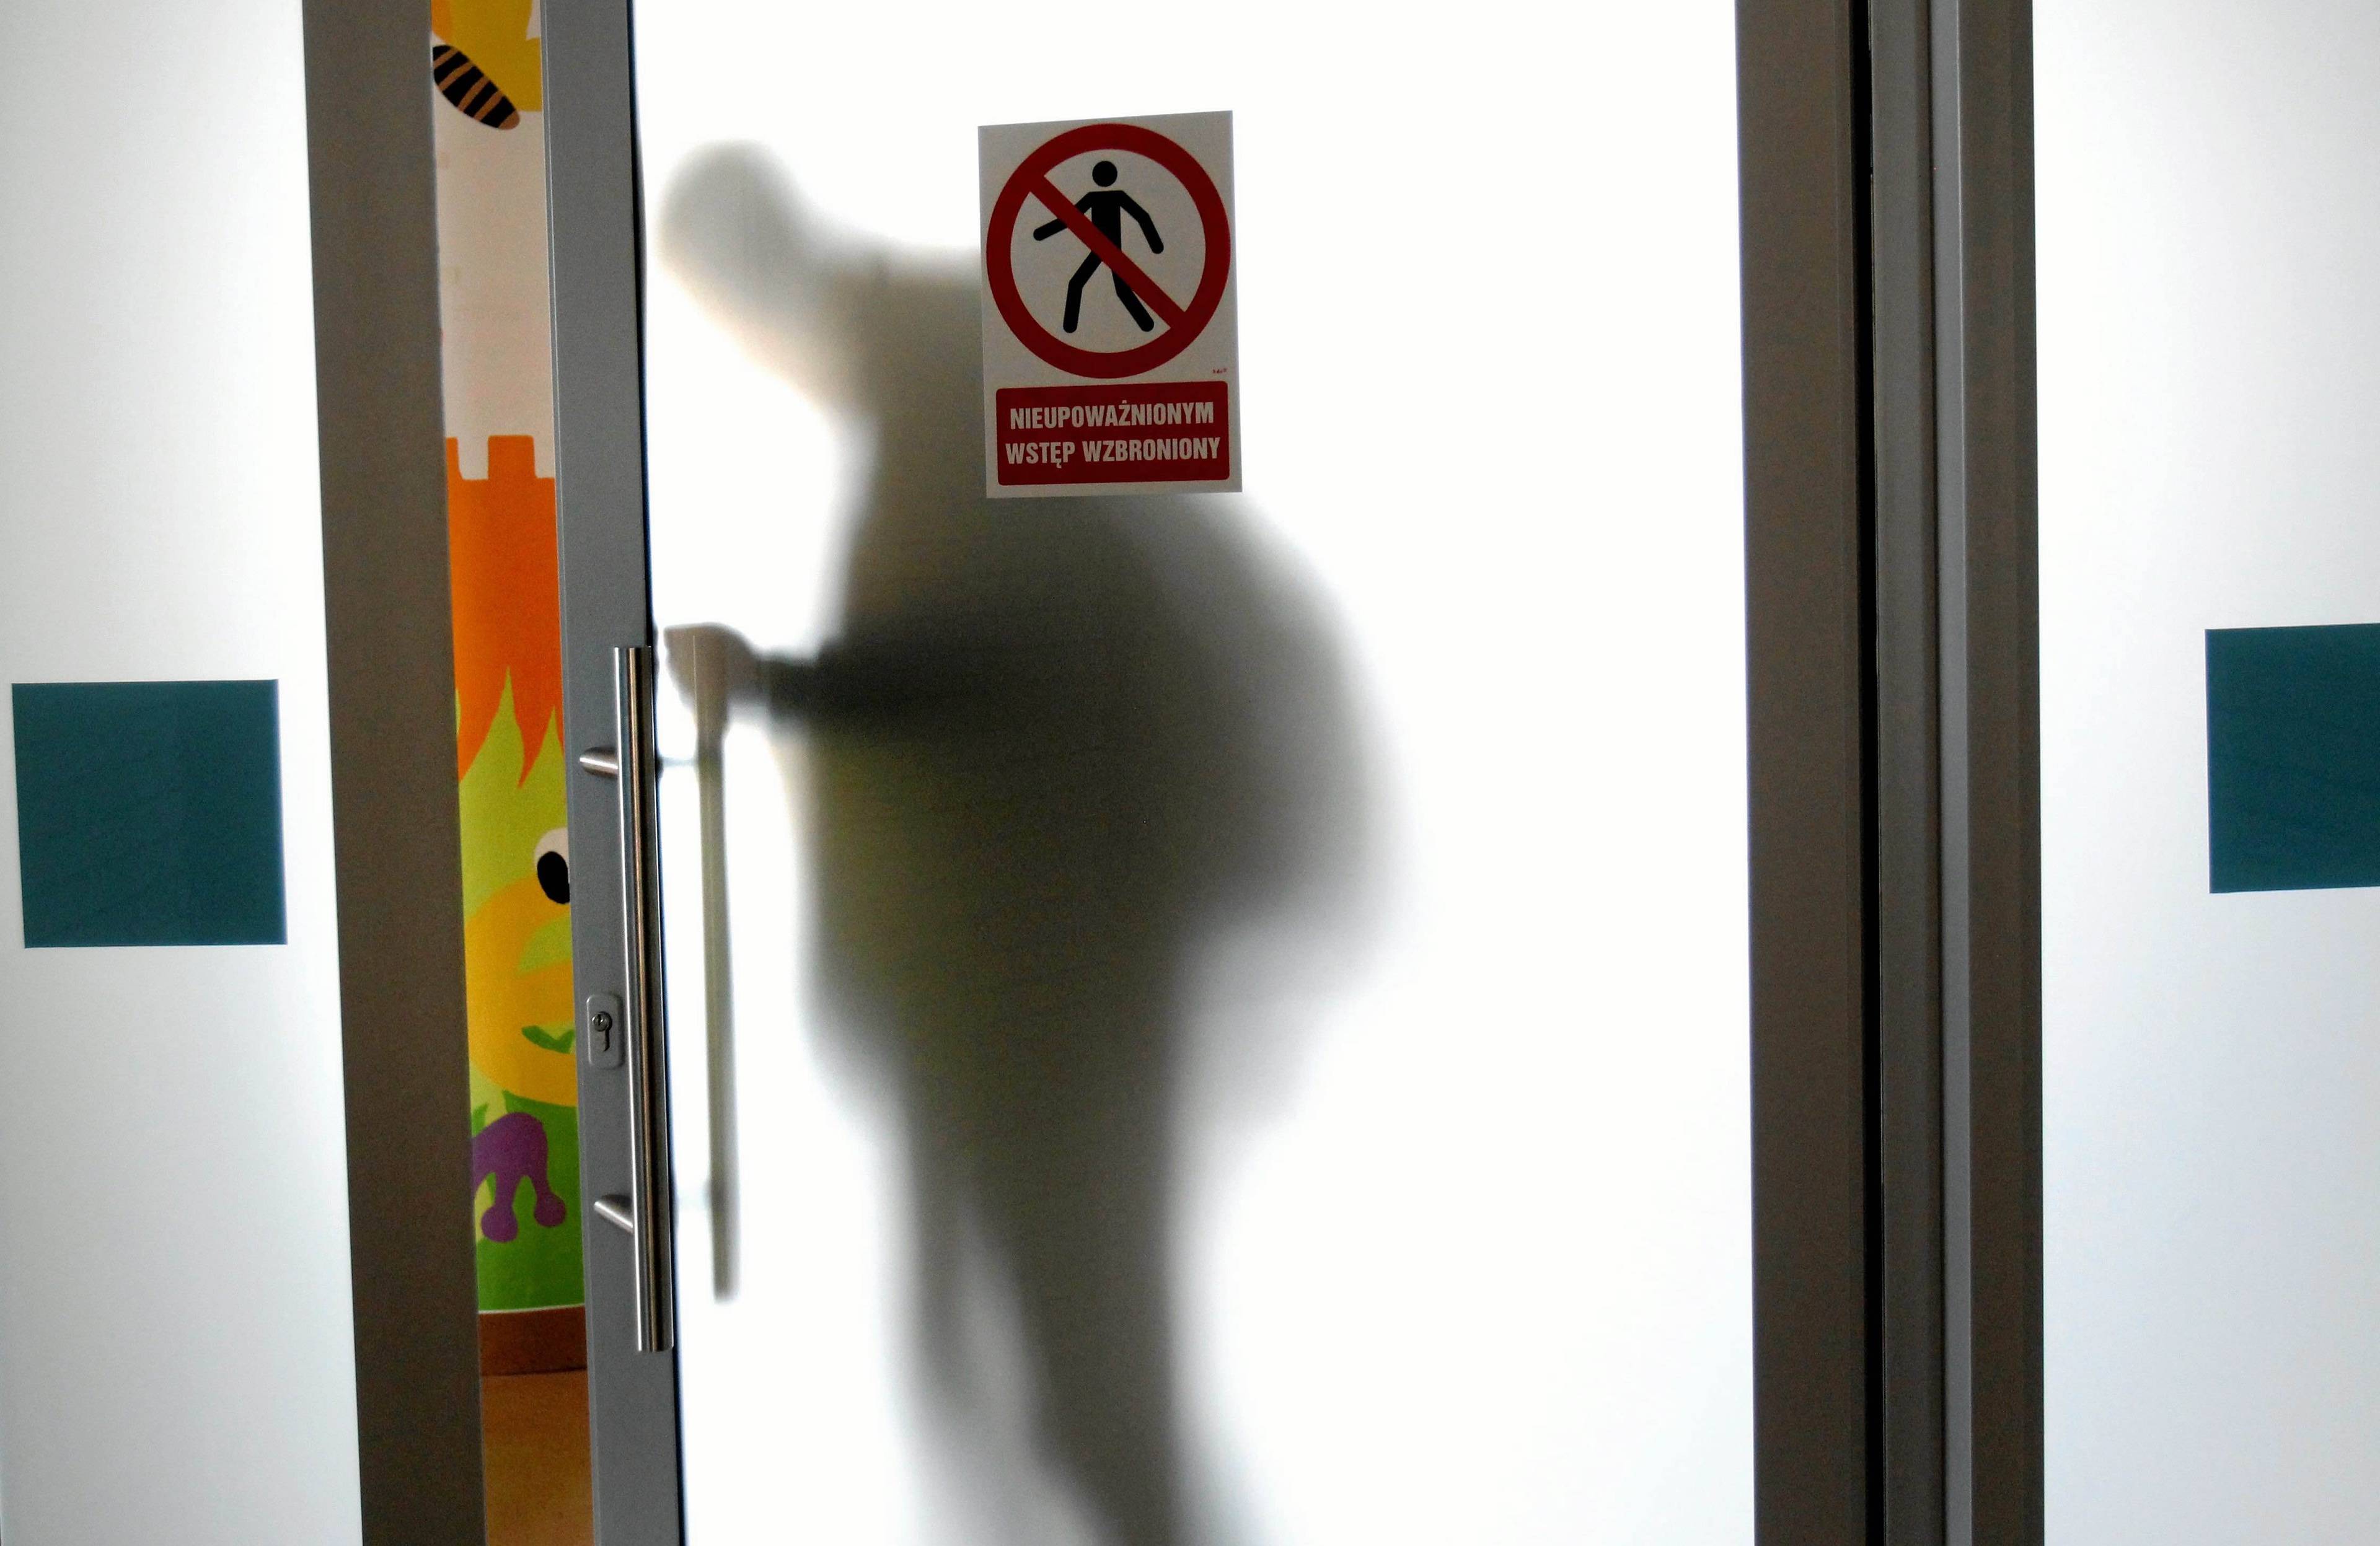 Drzwi z mlecznego szkła w placówce szpitalnej, za drzwiami widać cień człowieka, na d drzwiami napis „Nieupoważnionym wstęp wzbroniony” . Choroba genetyczna